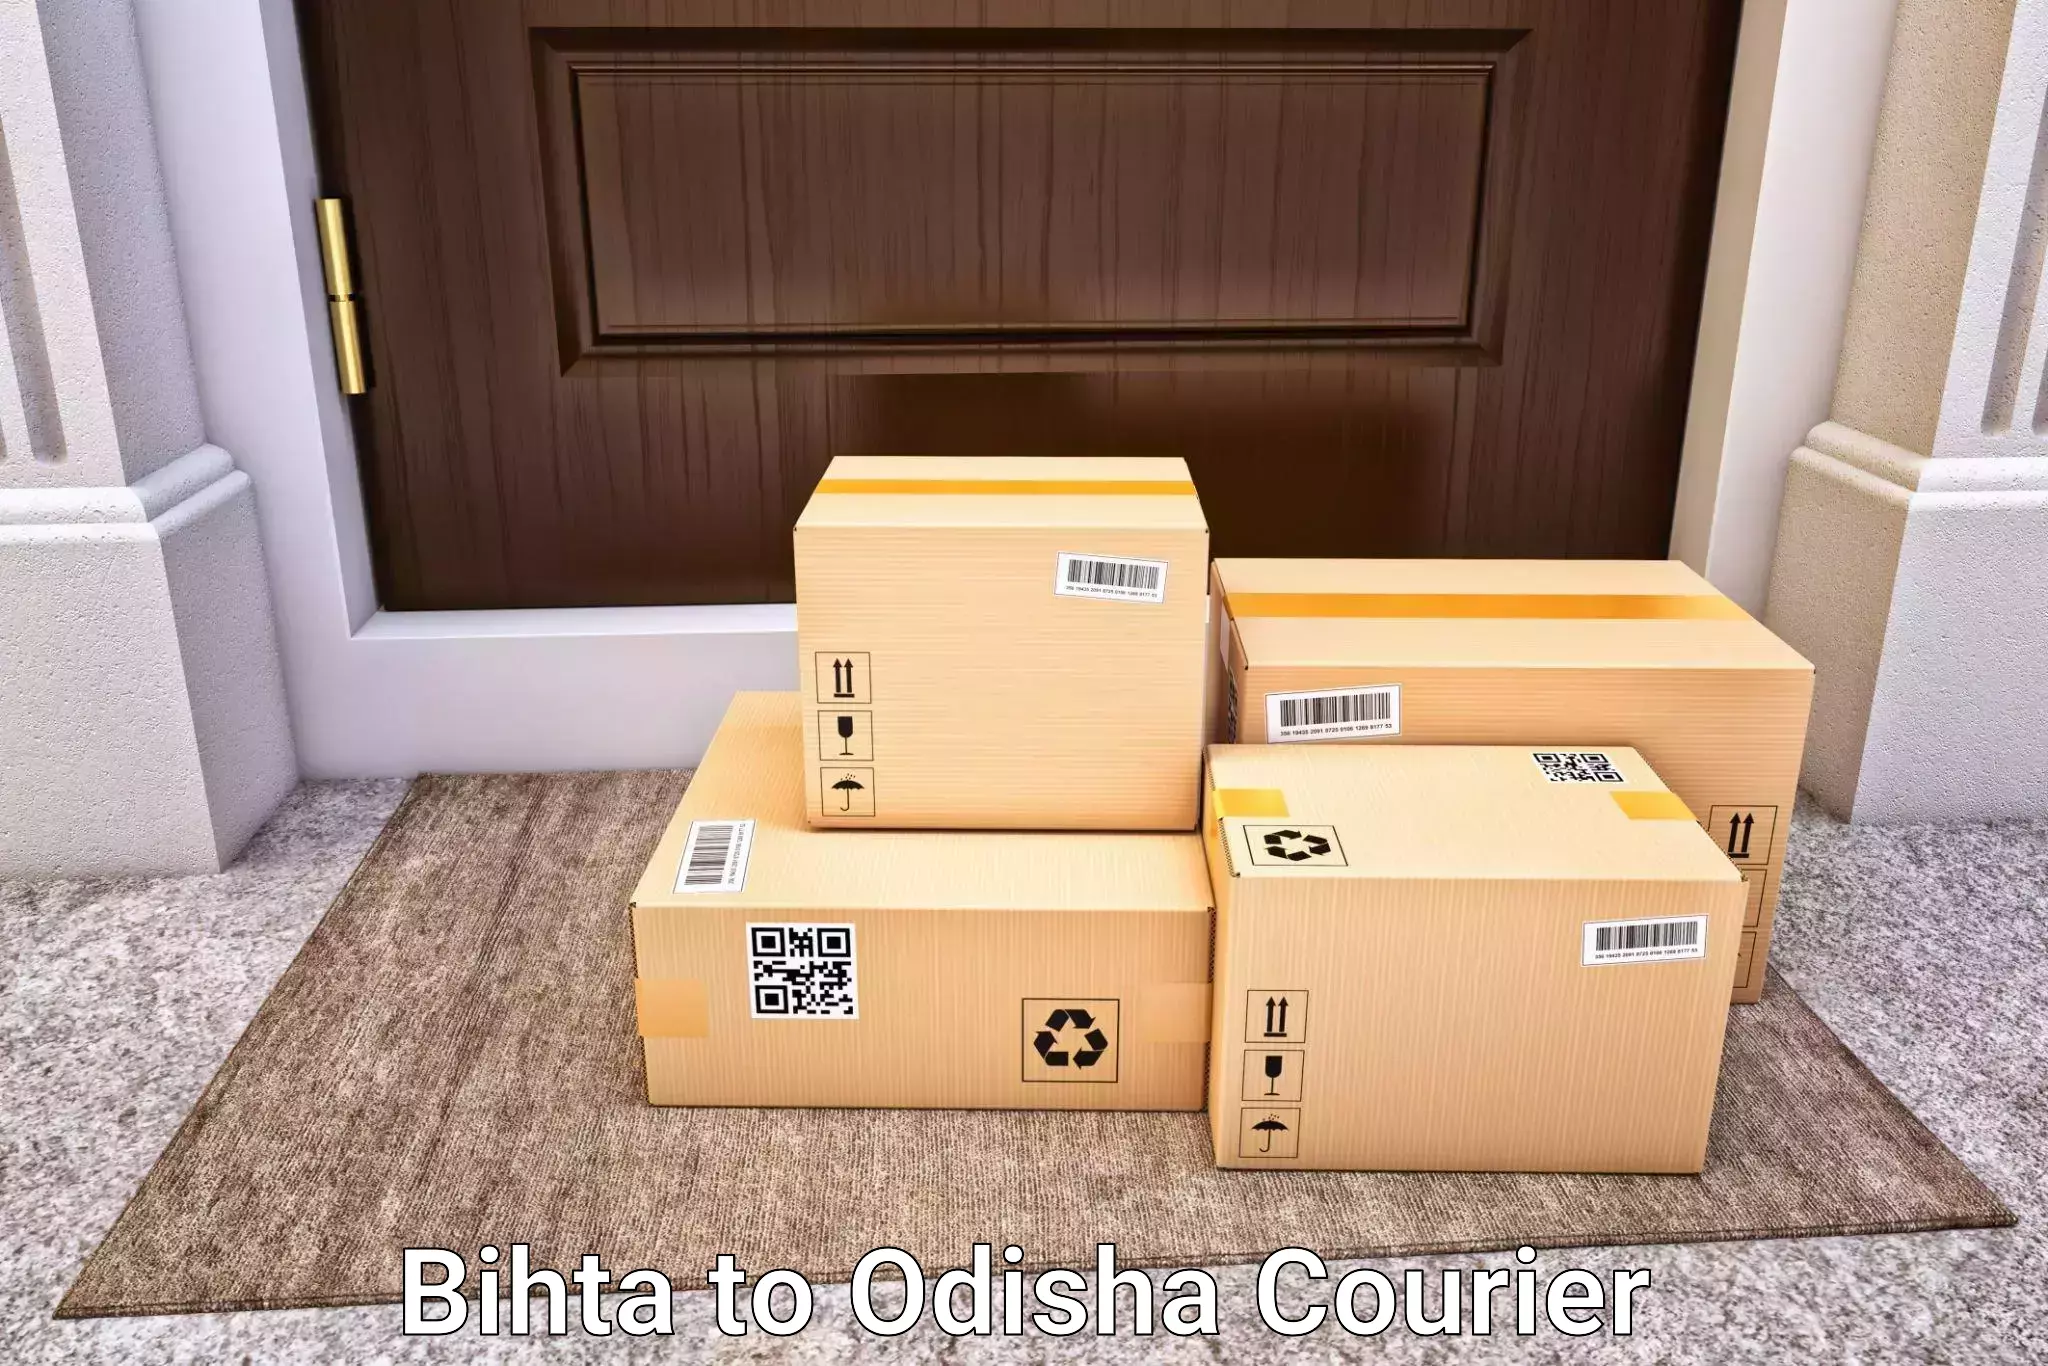 Luggage delivery calculator Bihta to Odisha